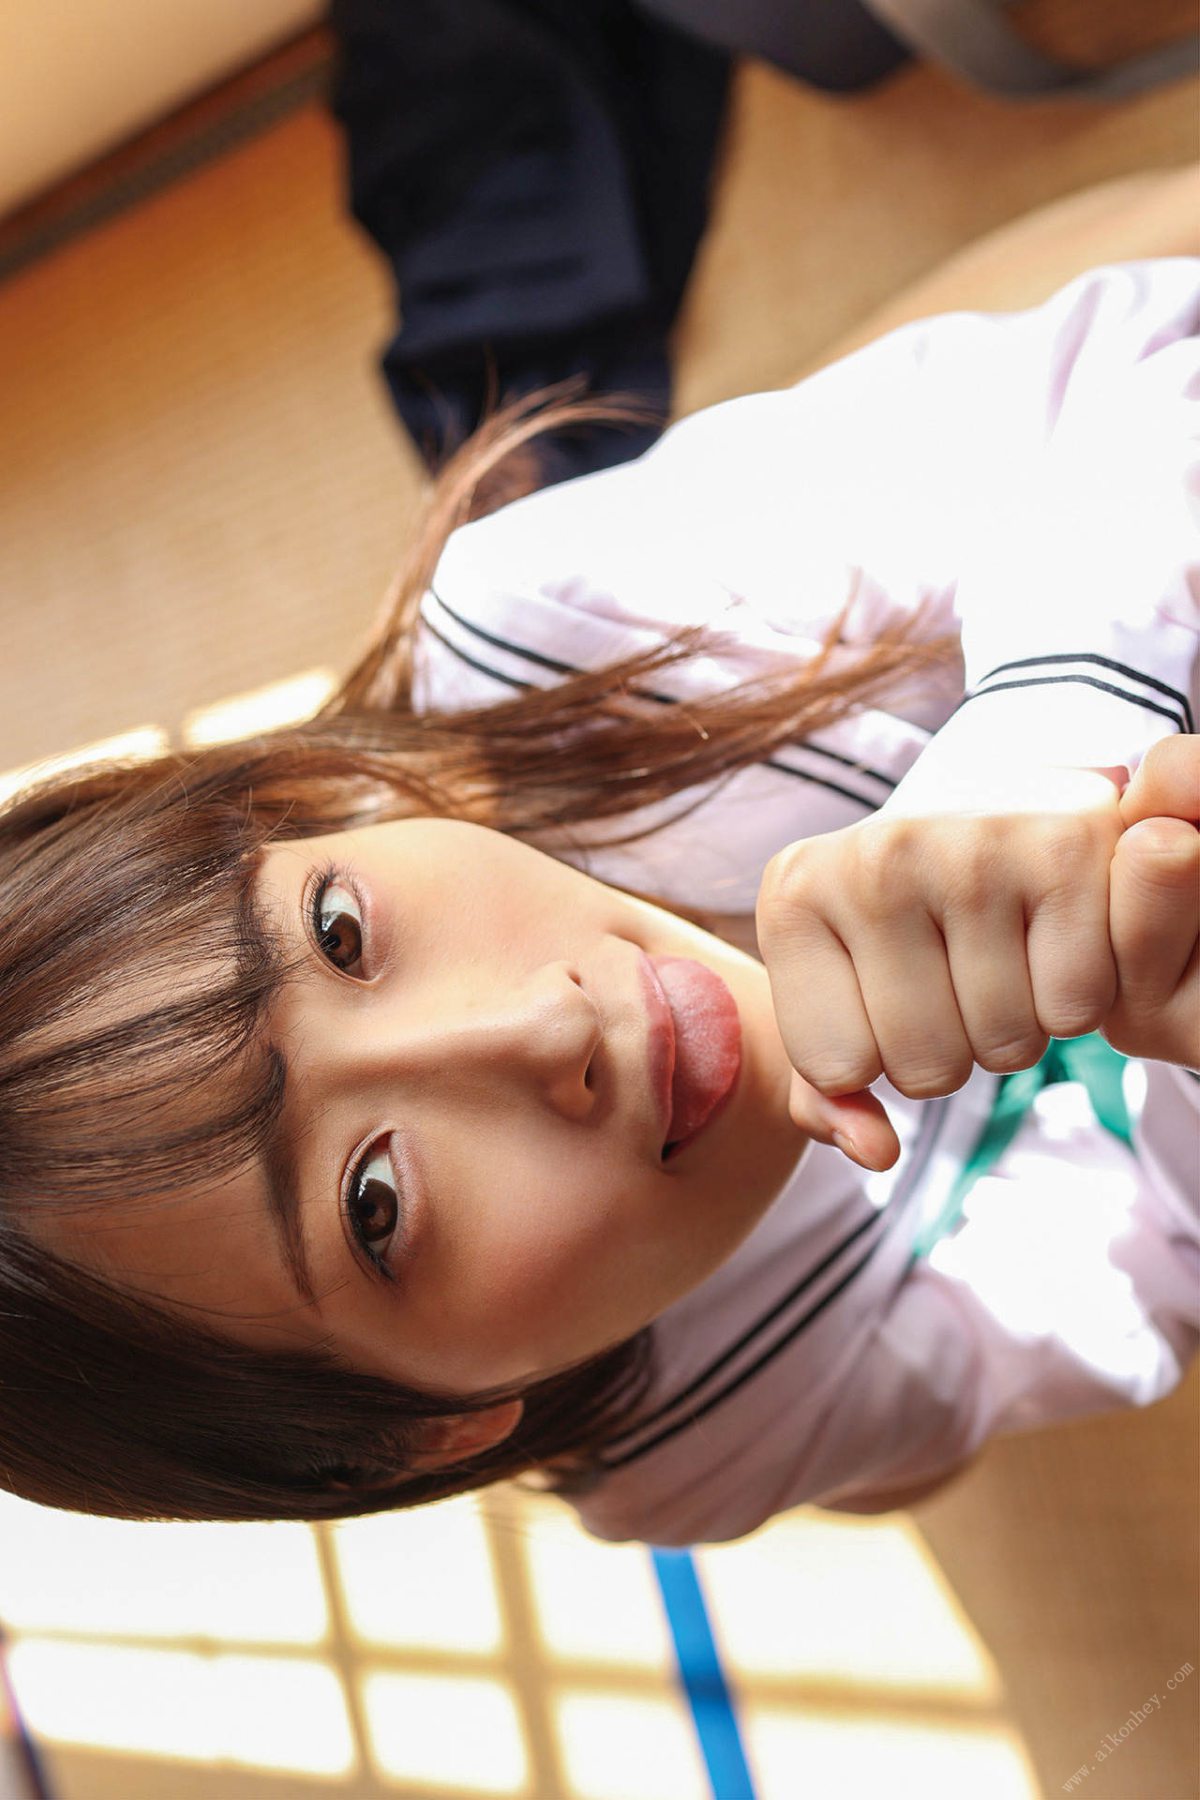 Photobook Mizuki Amane 天然美月 Little girl 幼な少女 2021 12 17 0025 3258791427.jpg